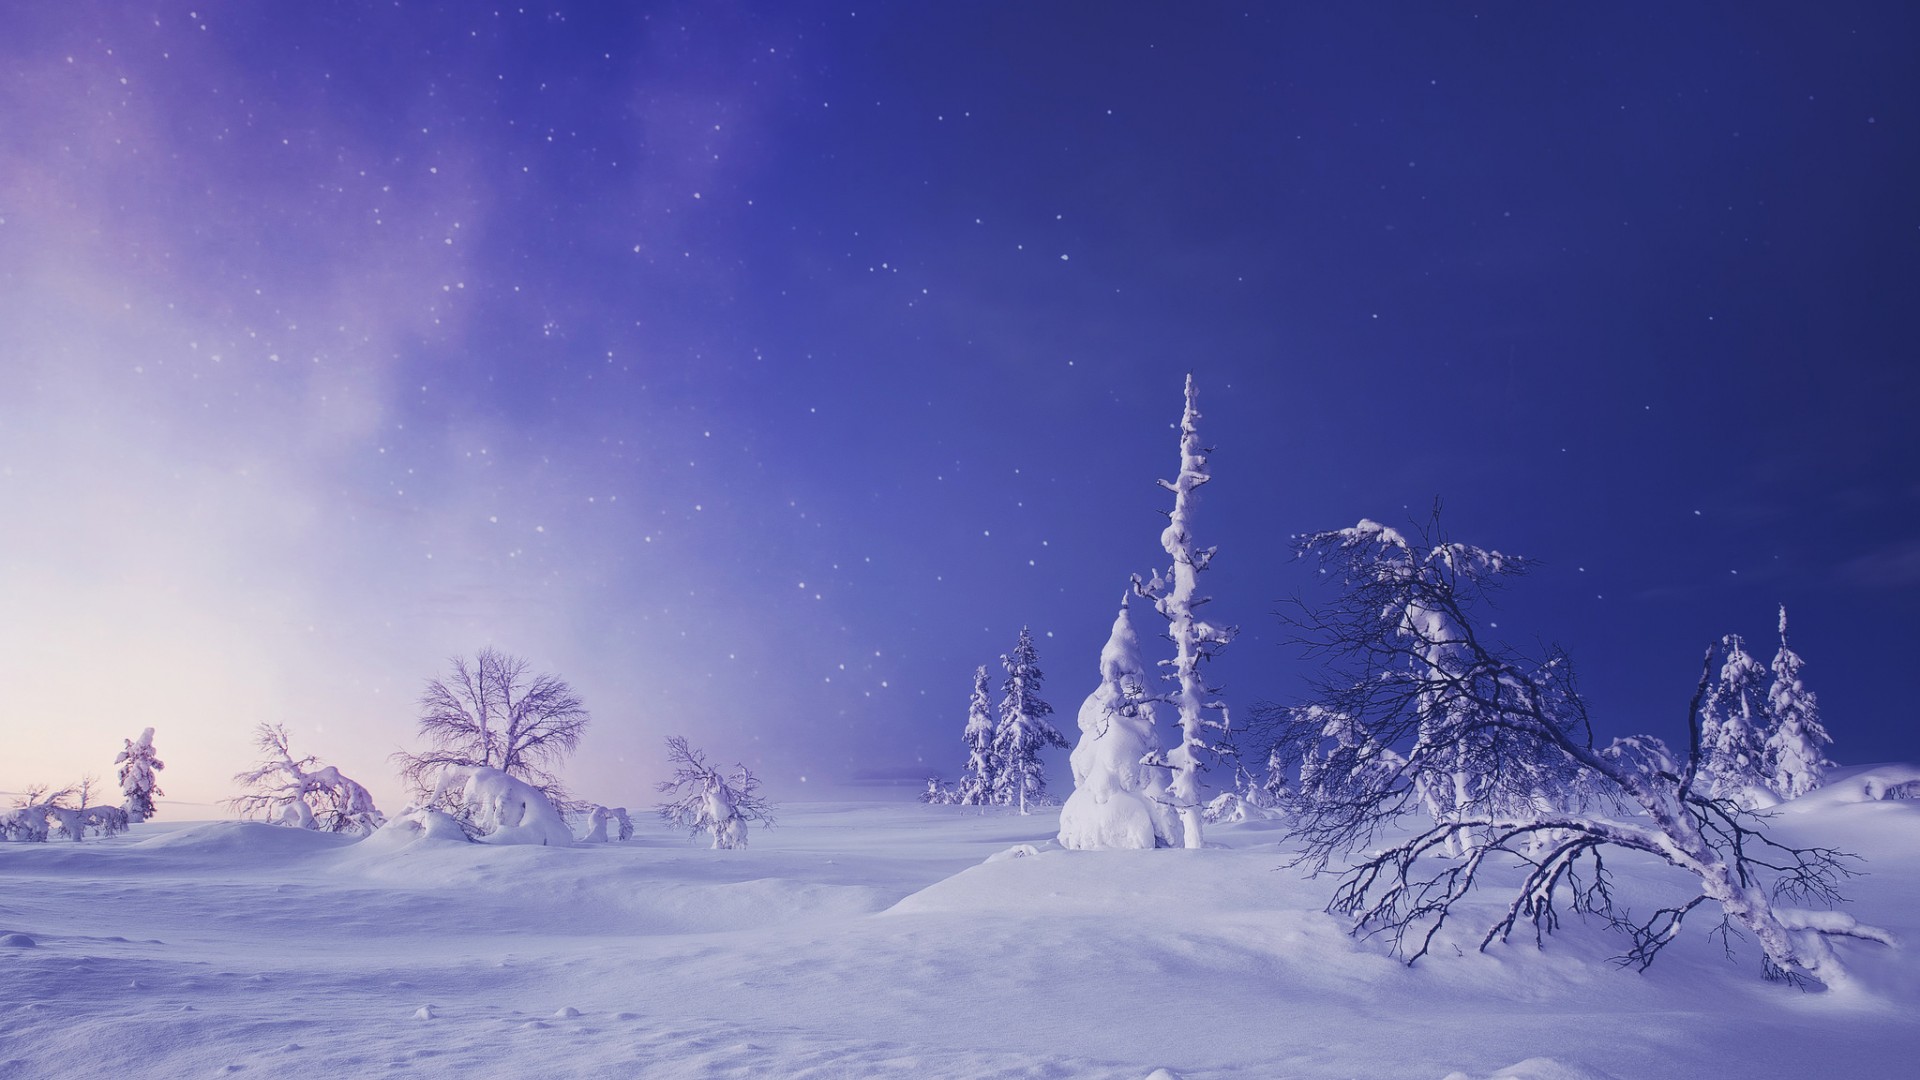 芬兰,拉普兰,冬季,雪,树,天空,风景桌面壁纸